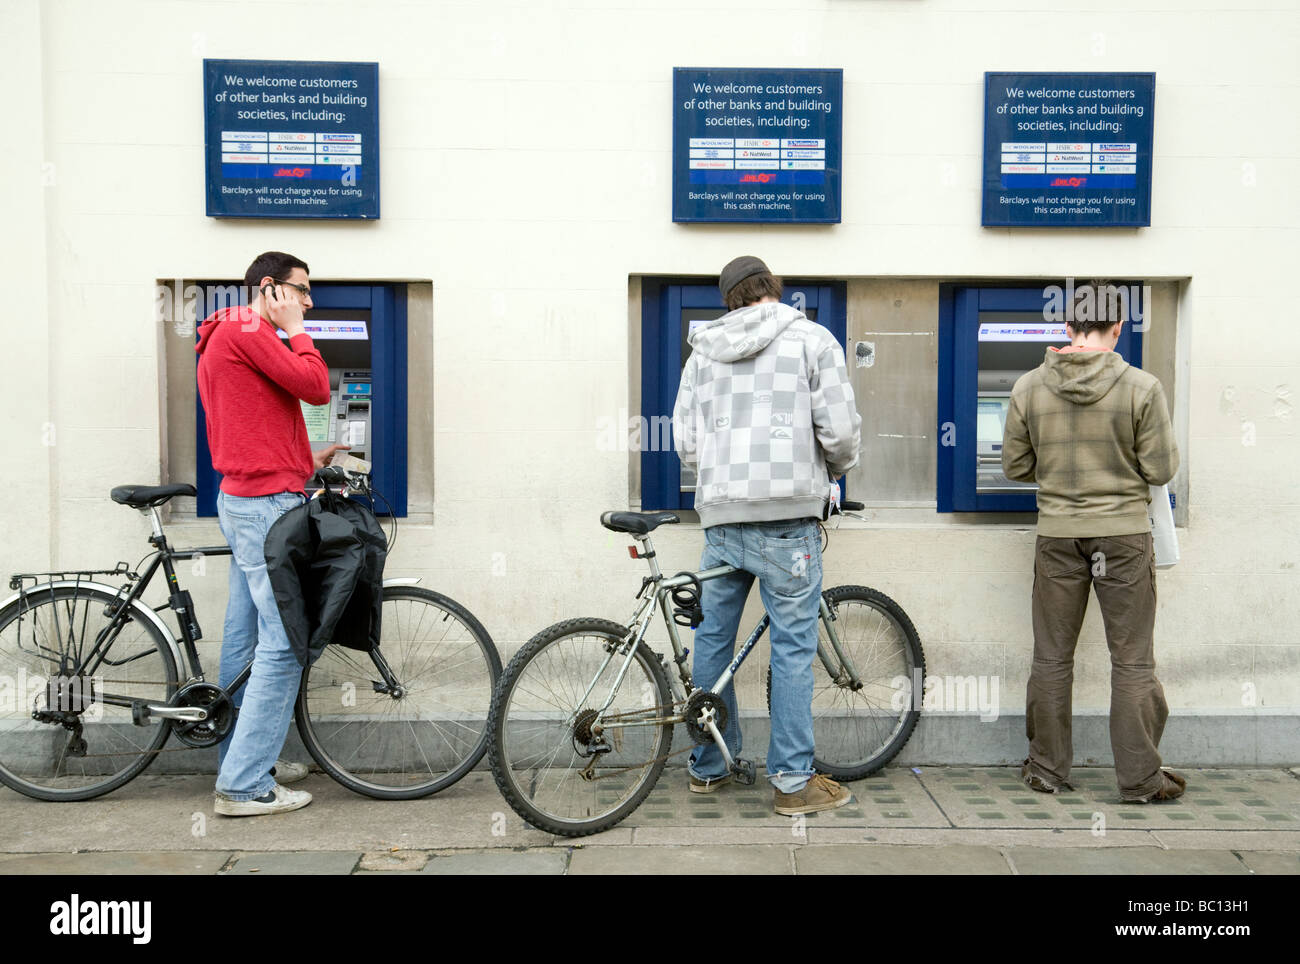 Les étudiants de l'université en utilisant les trois distributeurs automatiques de la banque Barclays, Market Square, Cambridge, Royaume-Uni Banque D'Images